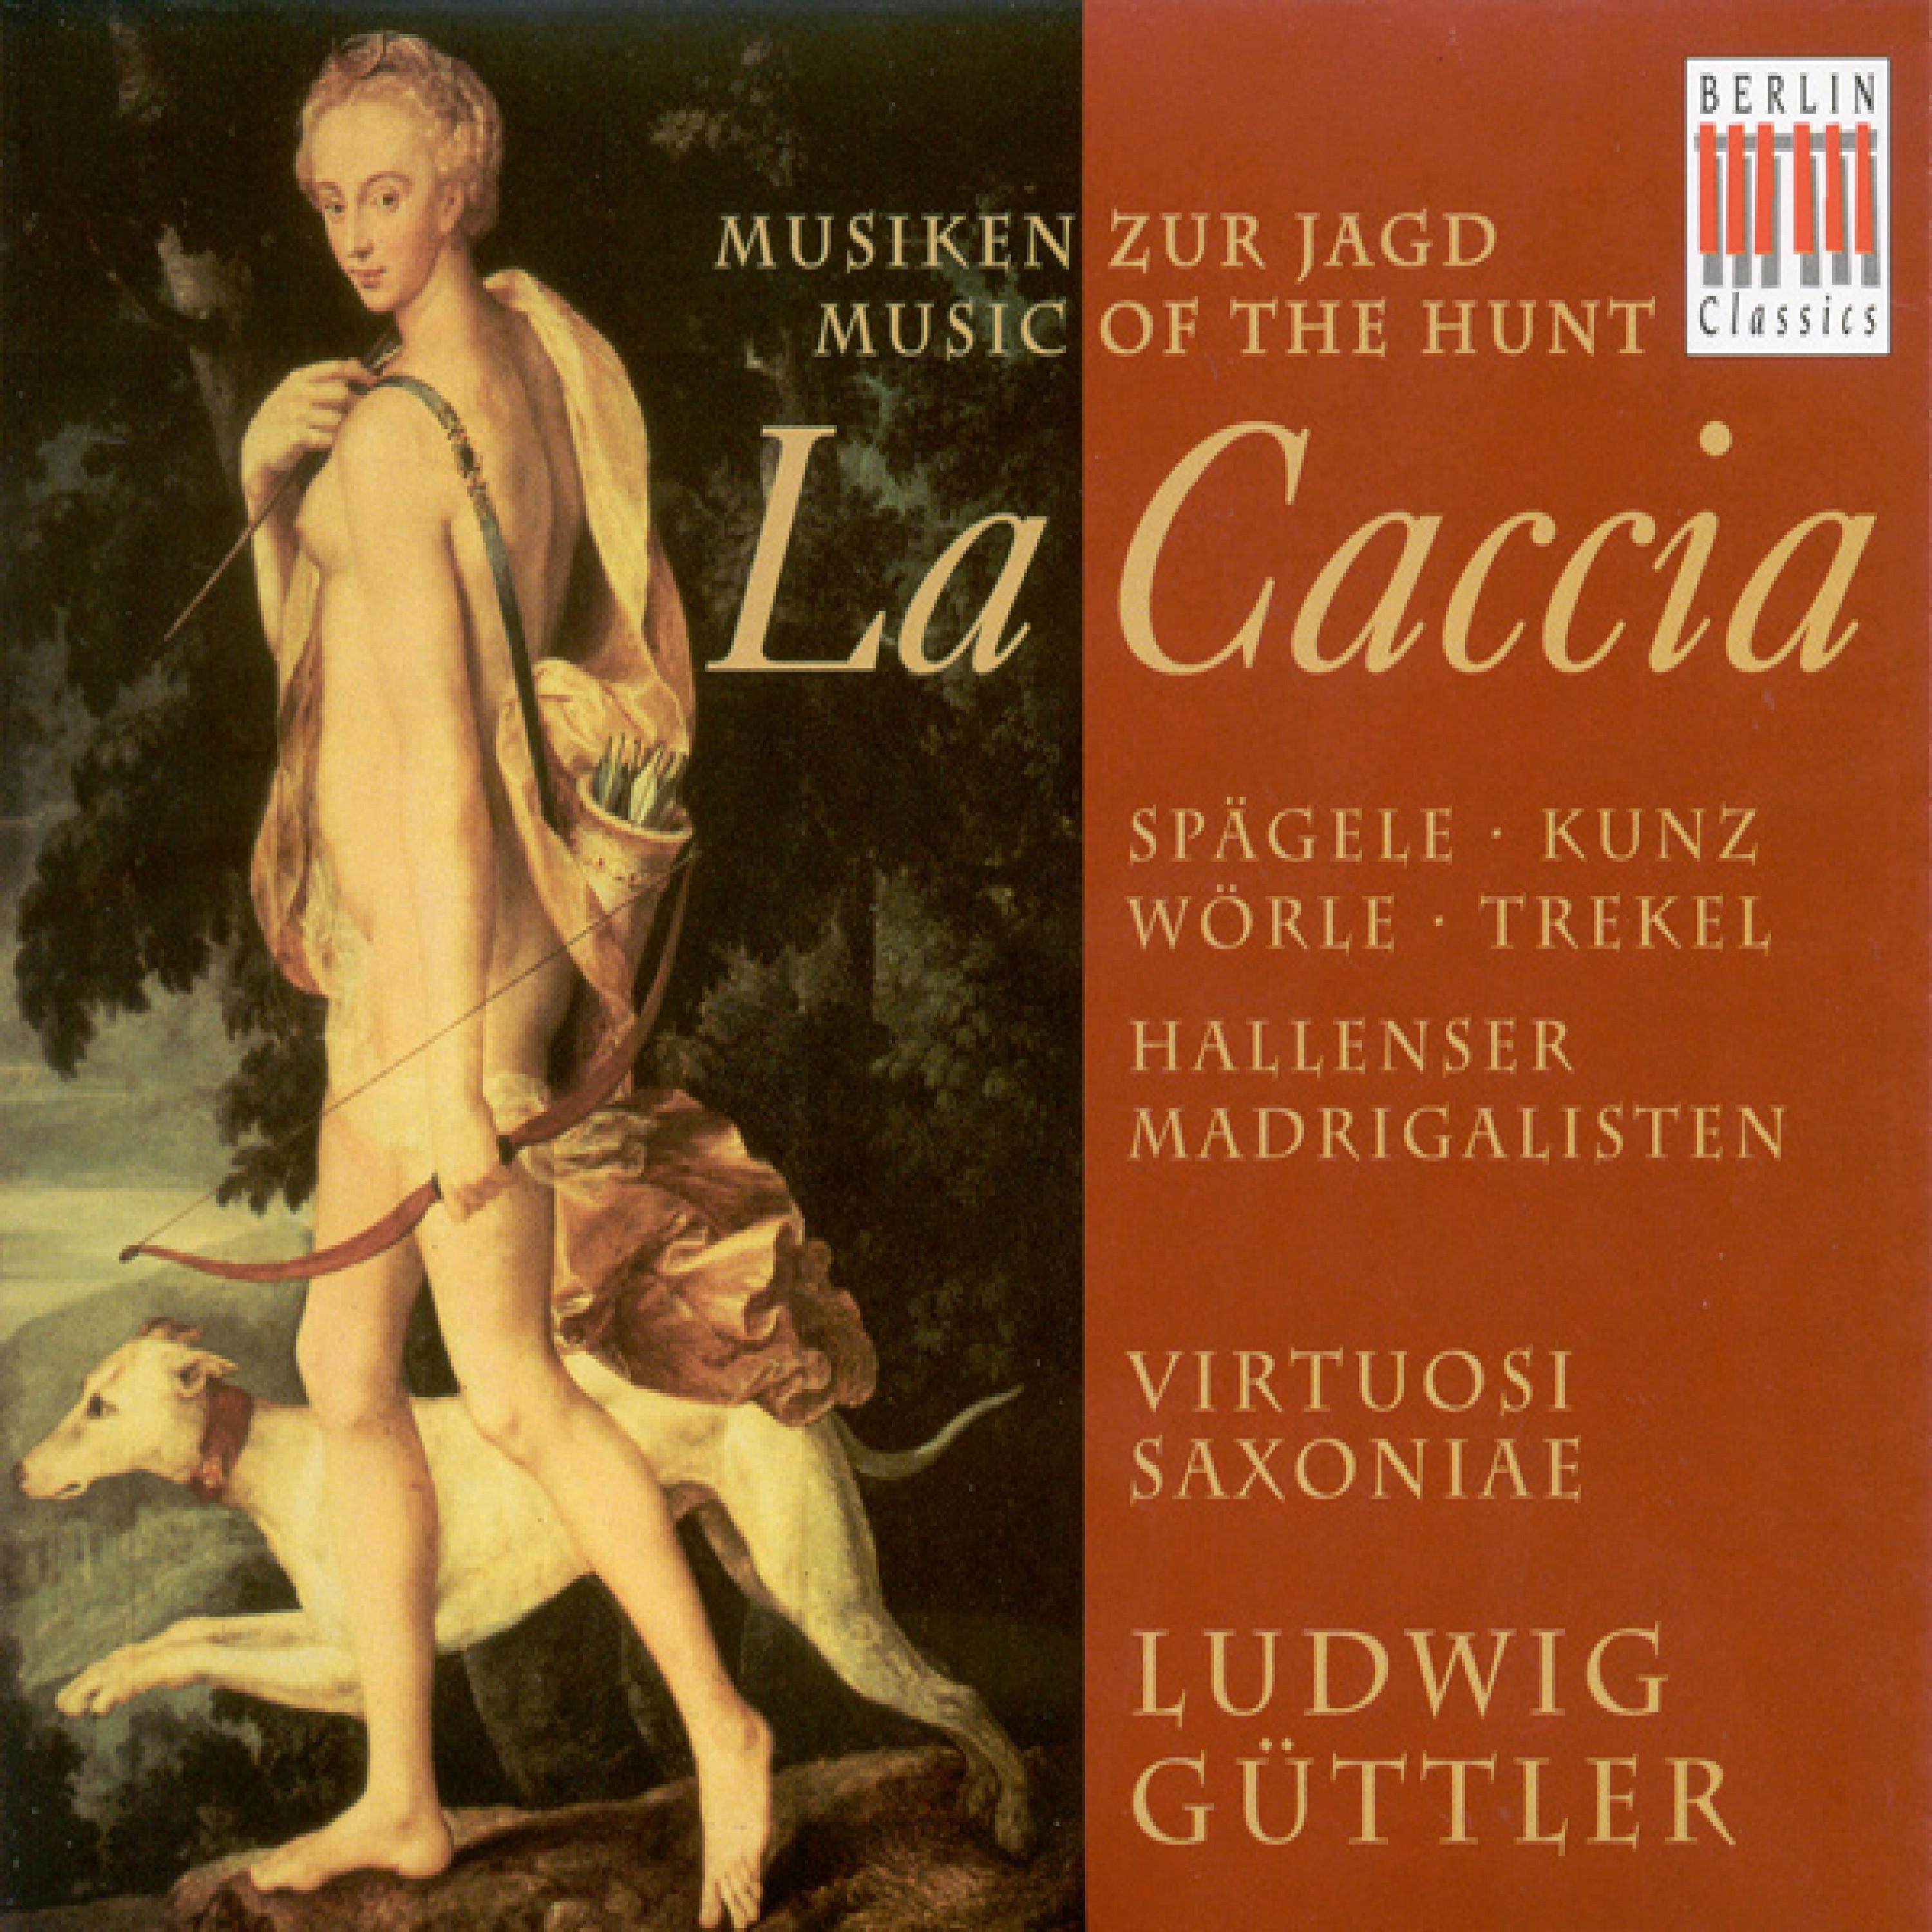 Violin Concerto in B flat major, Op. 8, No. 10, RV 362, "La caccia": II. Adagio